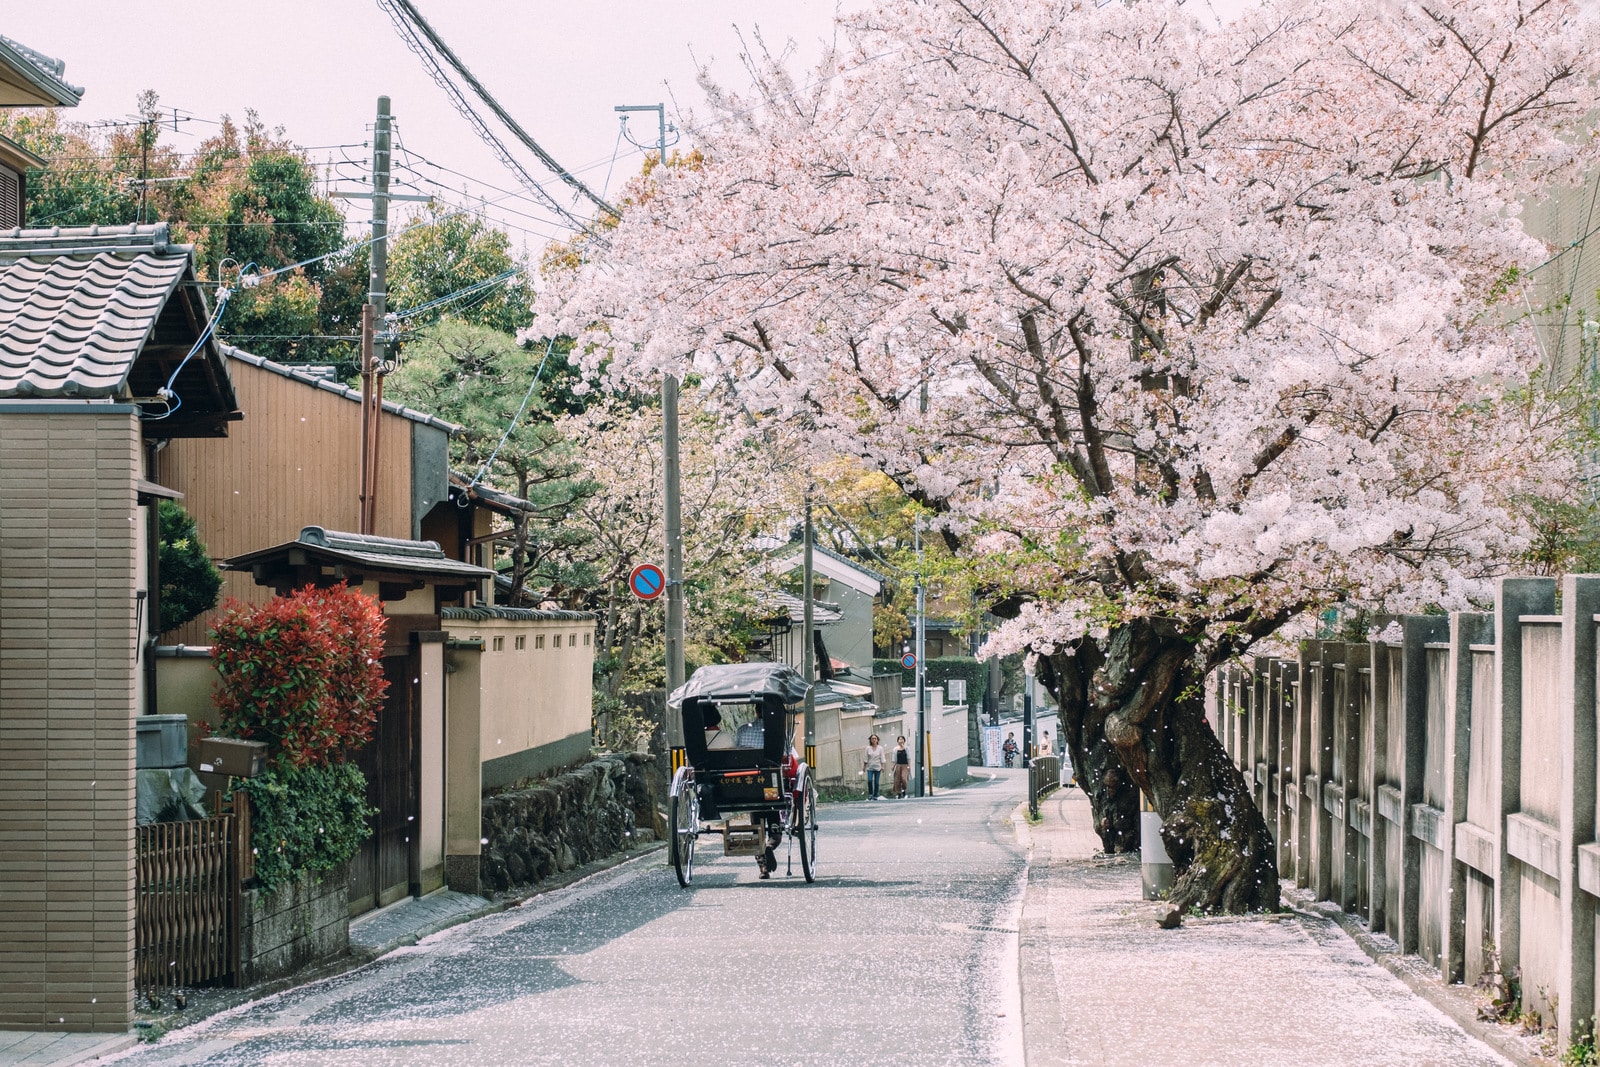 Luna de miel por Japón: Experiencia mágica y romántica